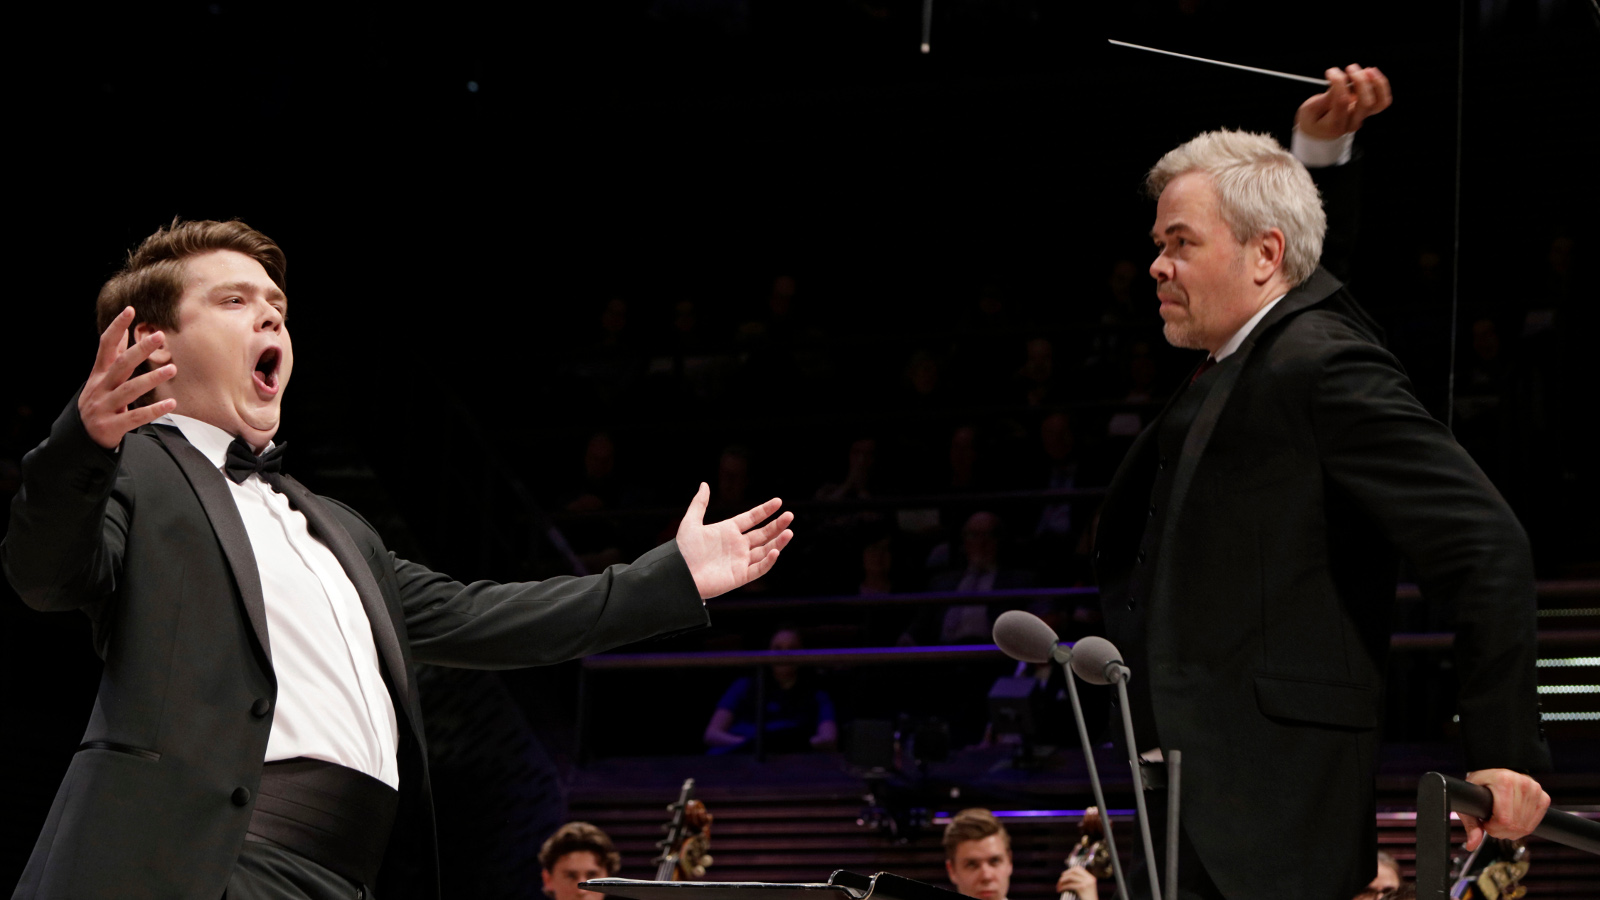 Kuvassa Stefan Astakhov kädet ojennettuina vasemmassa reunassa ja oikealla Hannu Lintu johtamassa orkesteria oikealla oikea käsi ylhäällä tahtipuikko kädessään. Alhaalla on orkesteri.